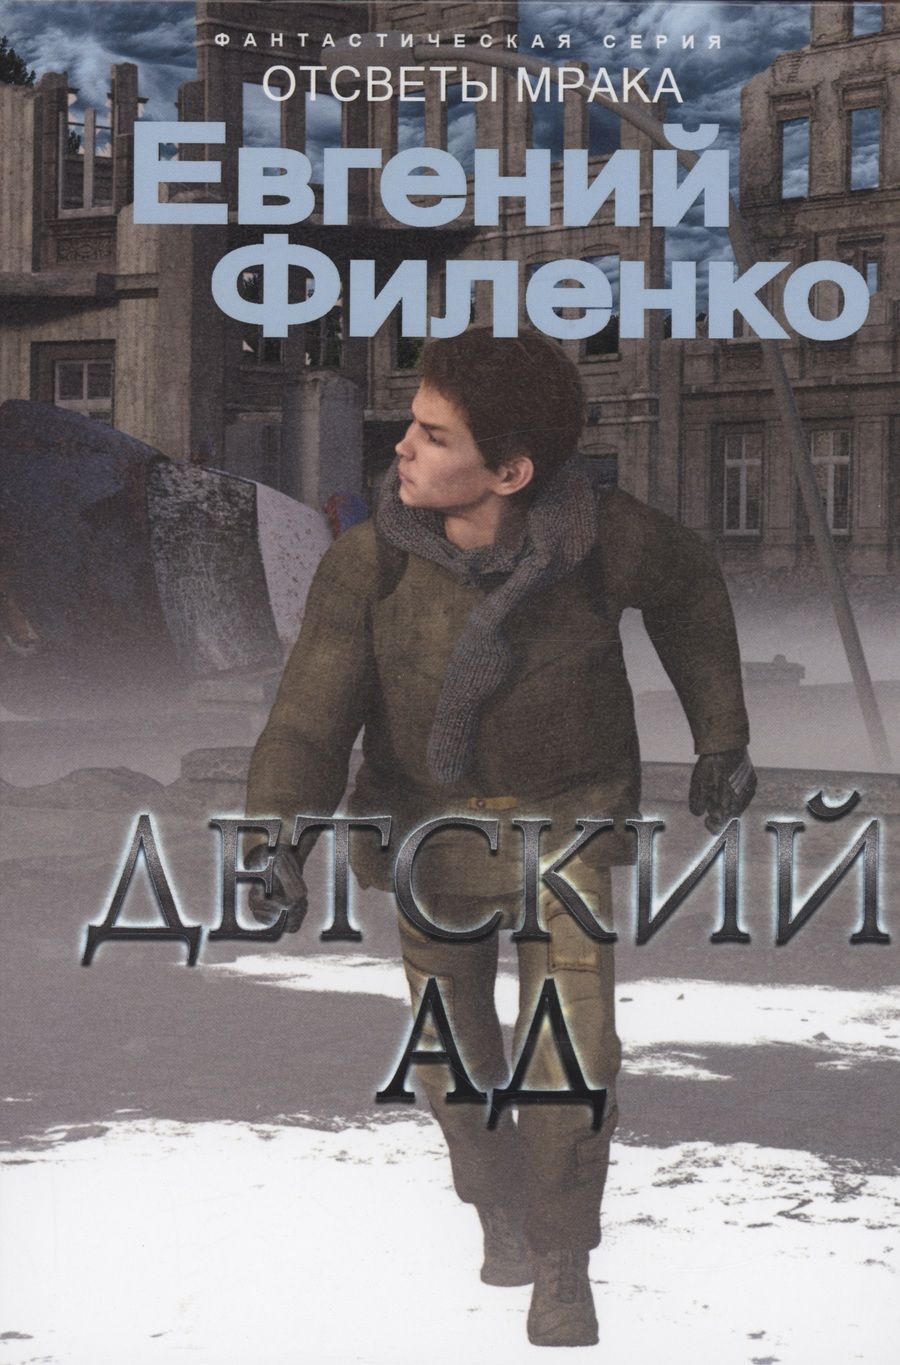 Обложка книги "Филенко: Детский ад"